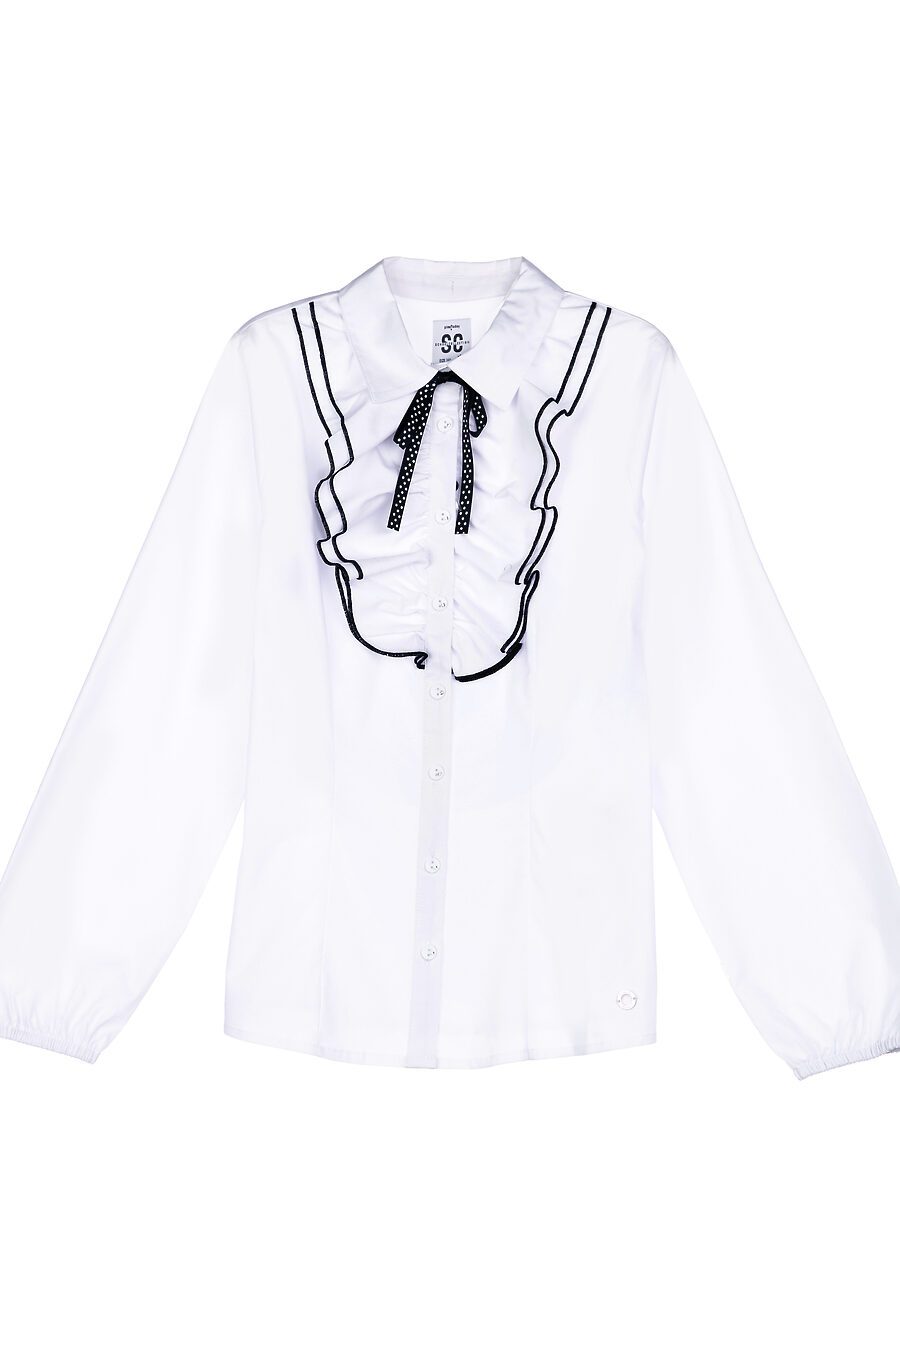 Блуза PLAYTODAY (785751), купить в Moyo.moda